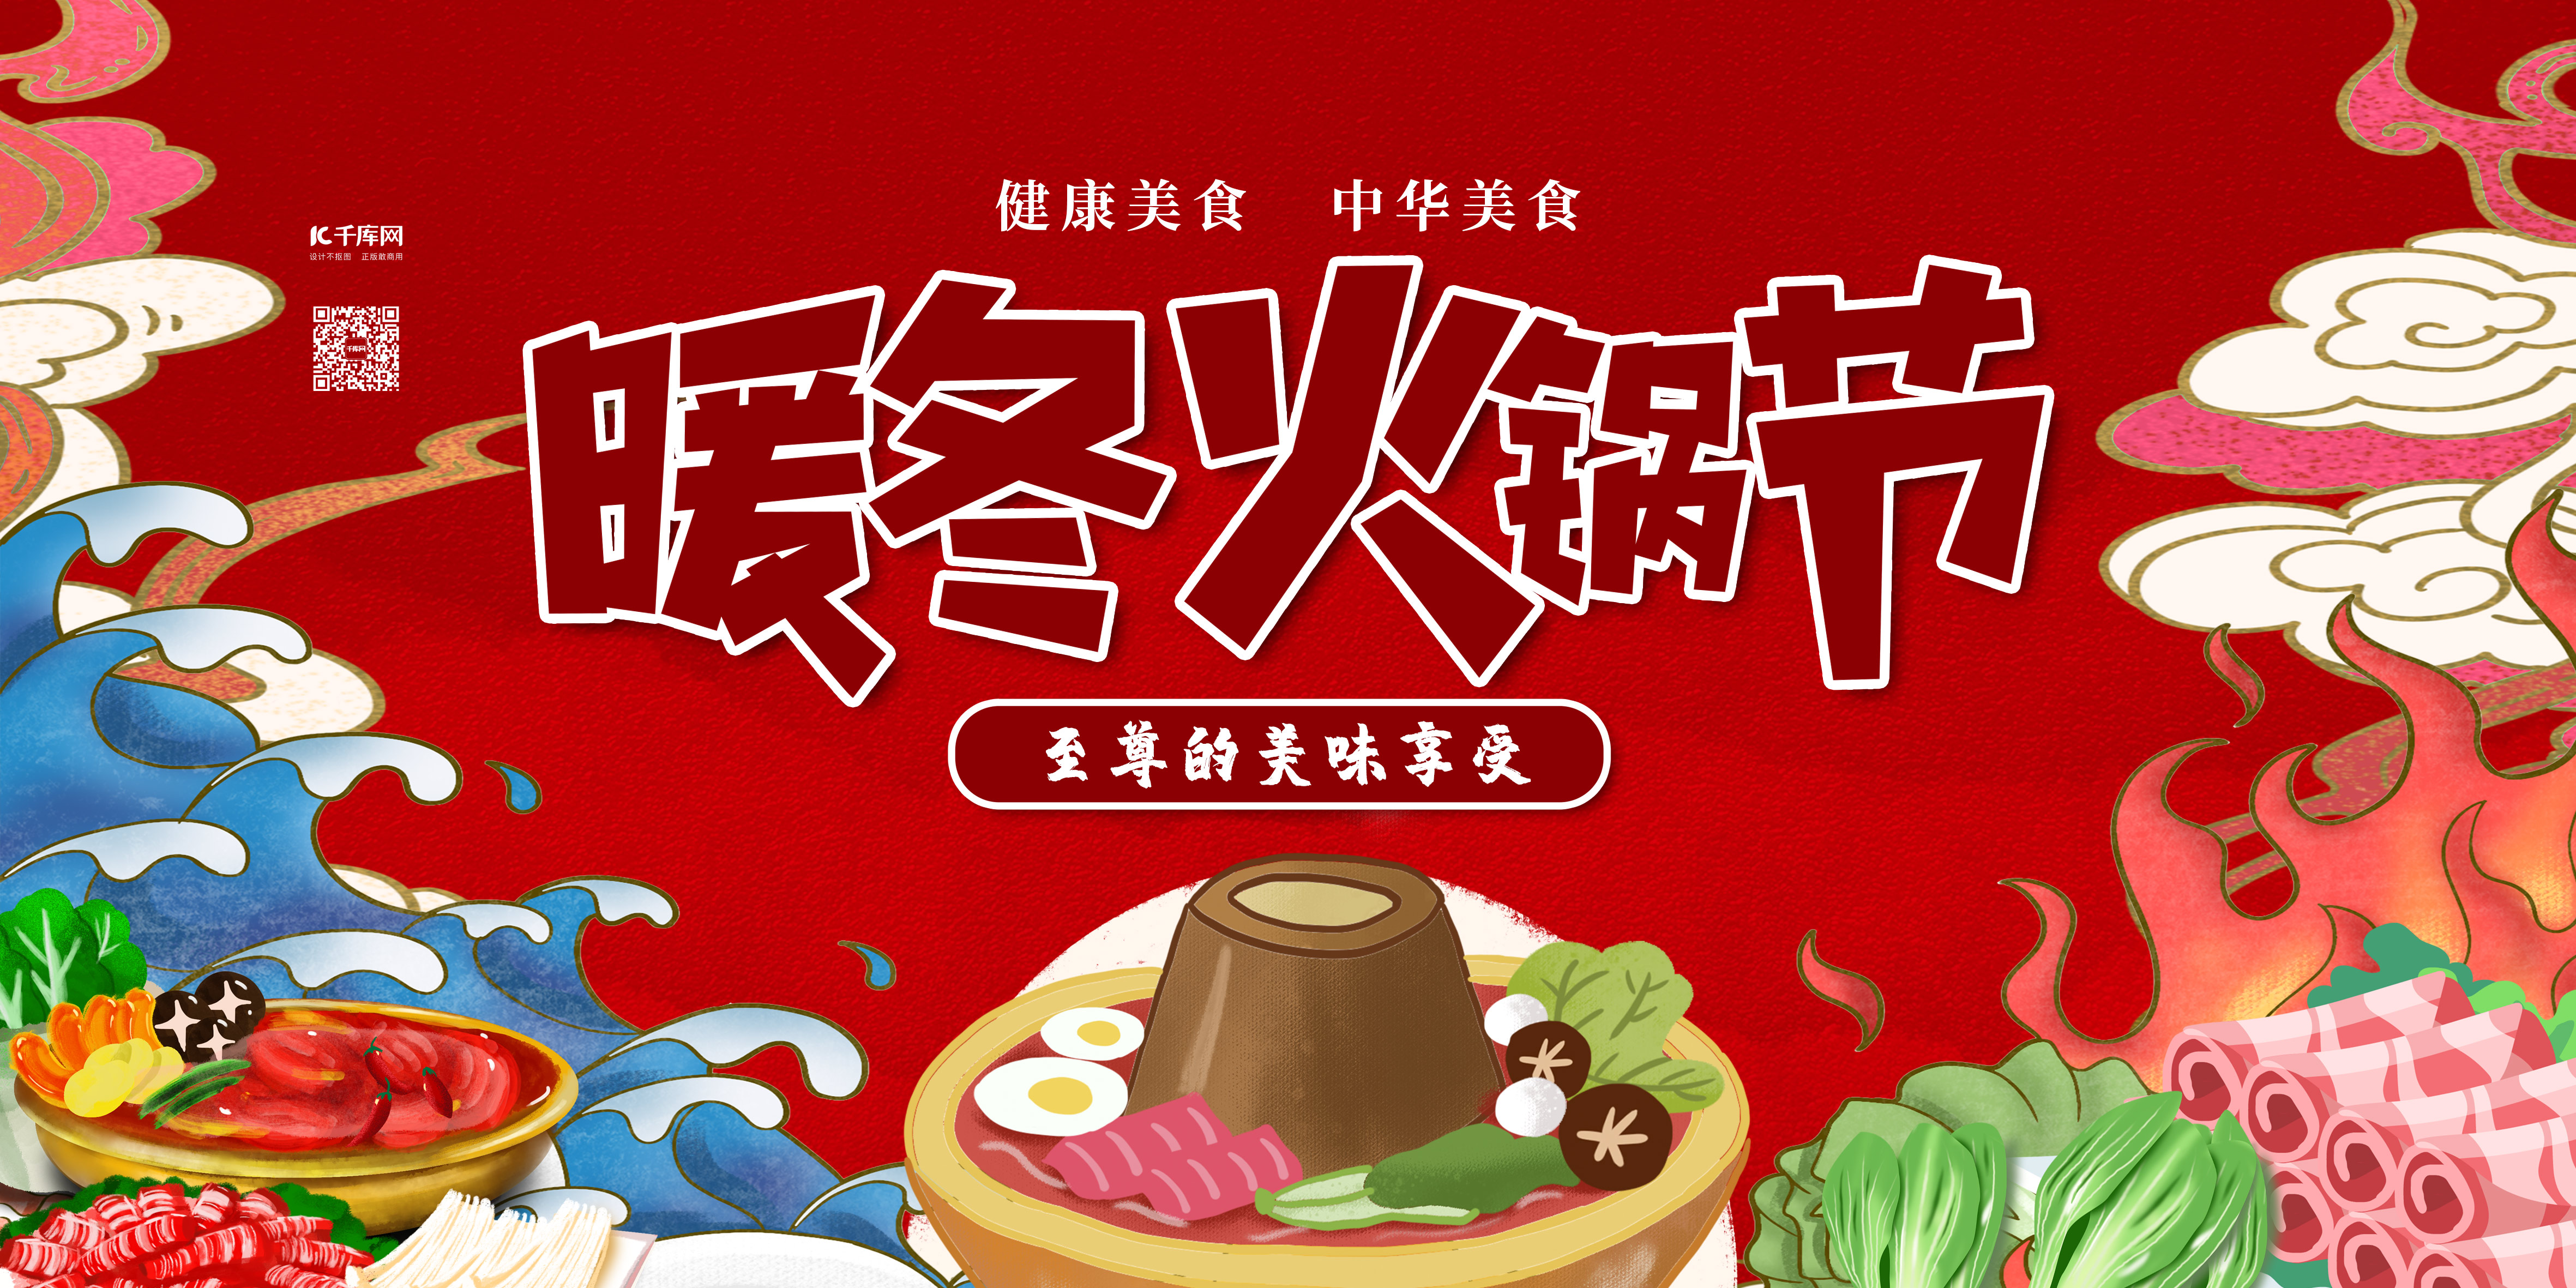 美食火锅节红色卡通展板图片